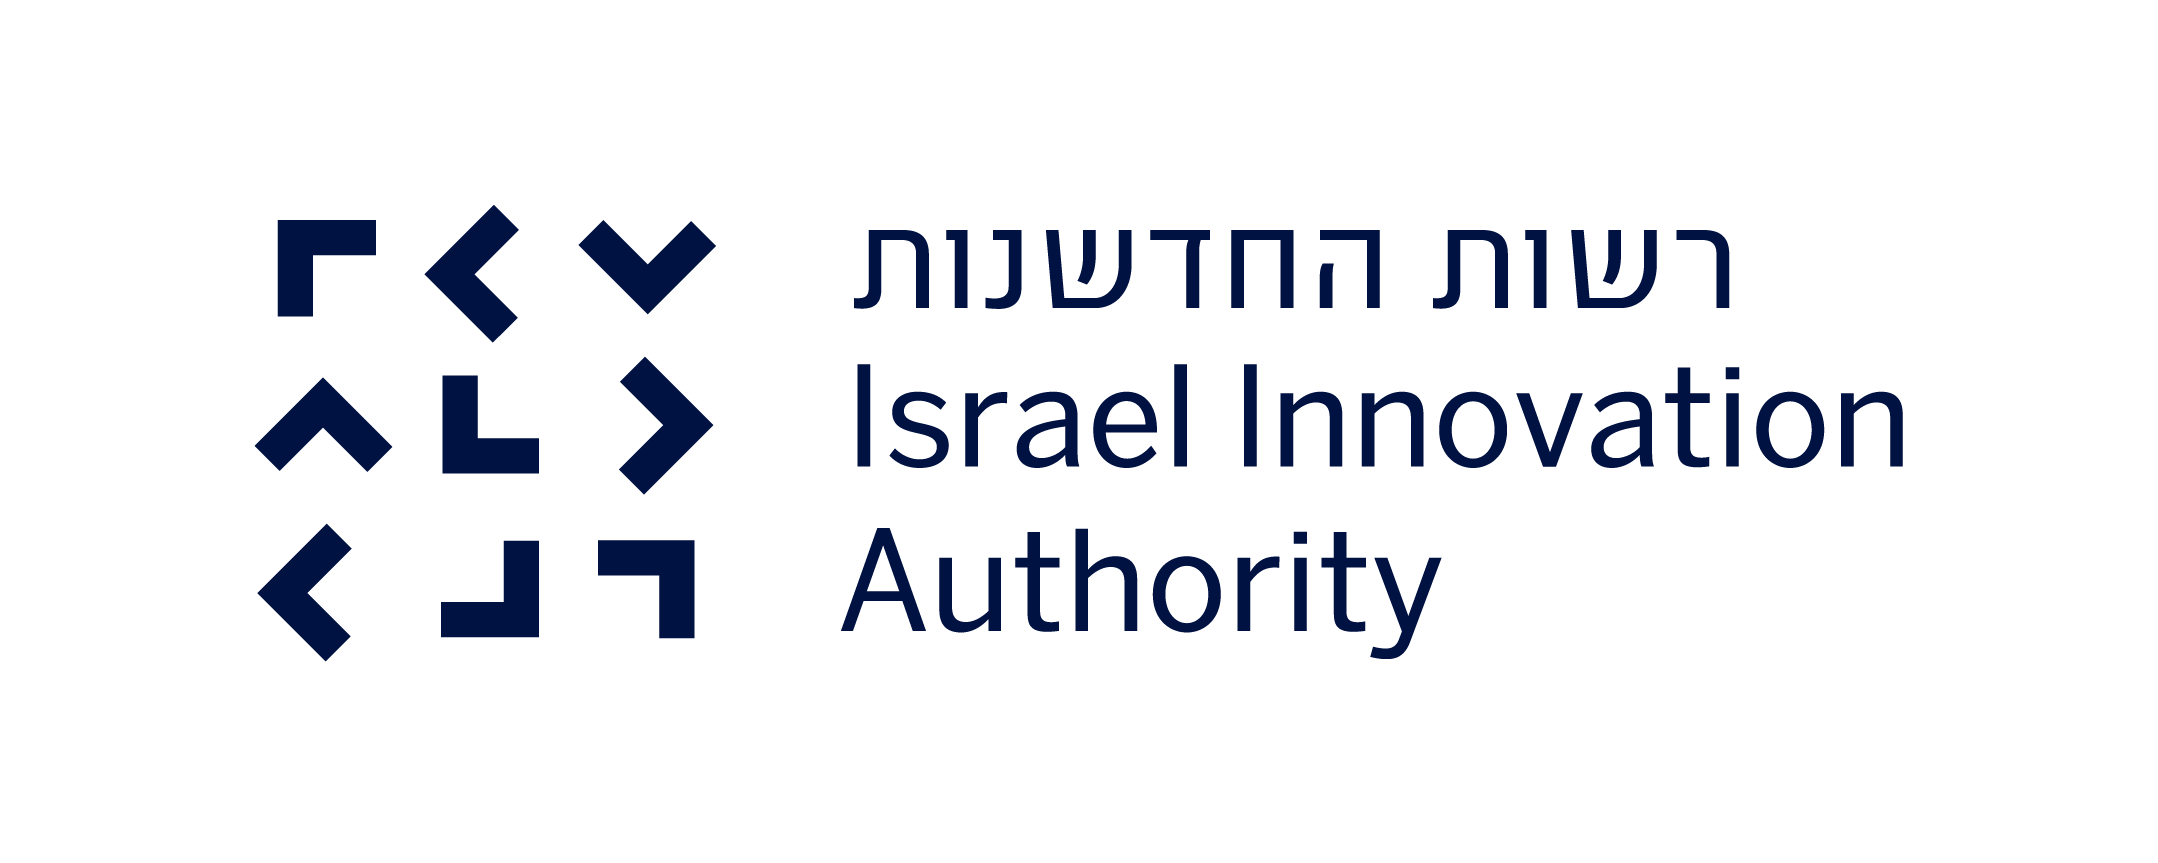 La Autoridad de Innovación de Israel será la encargada de elegir los programas de formación que recibirán el financiamiento. Foto: Creative Commons.